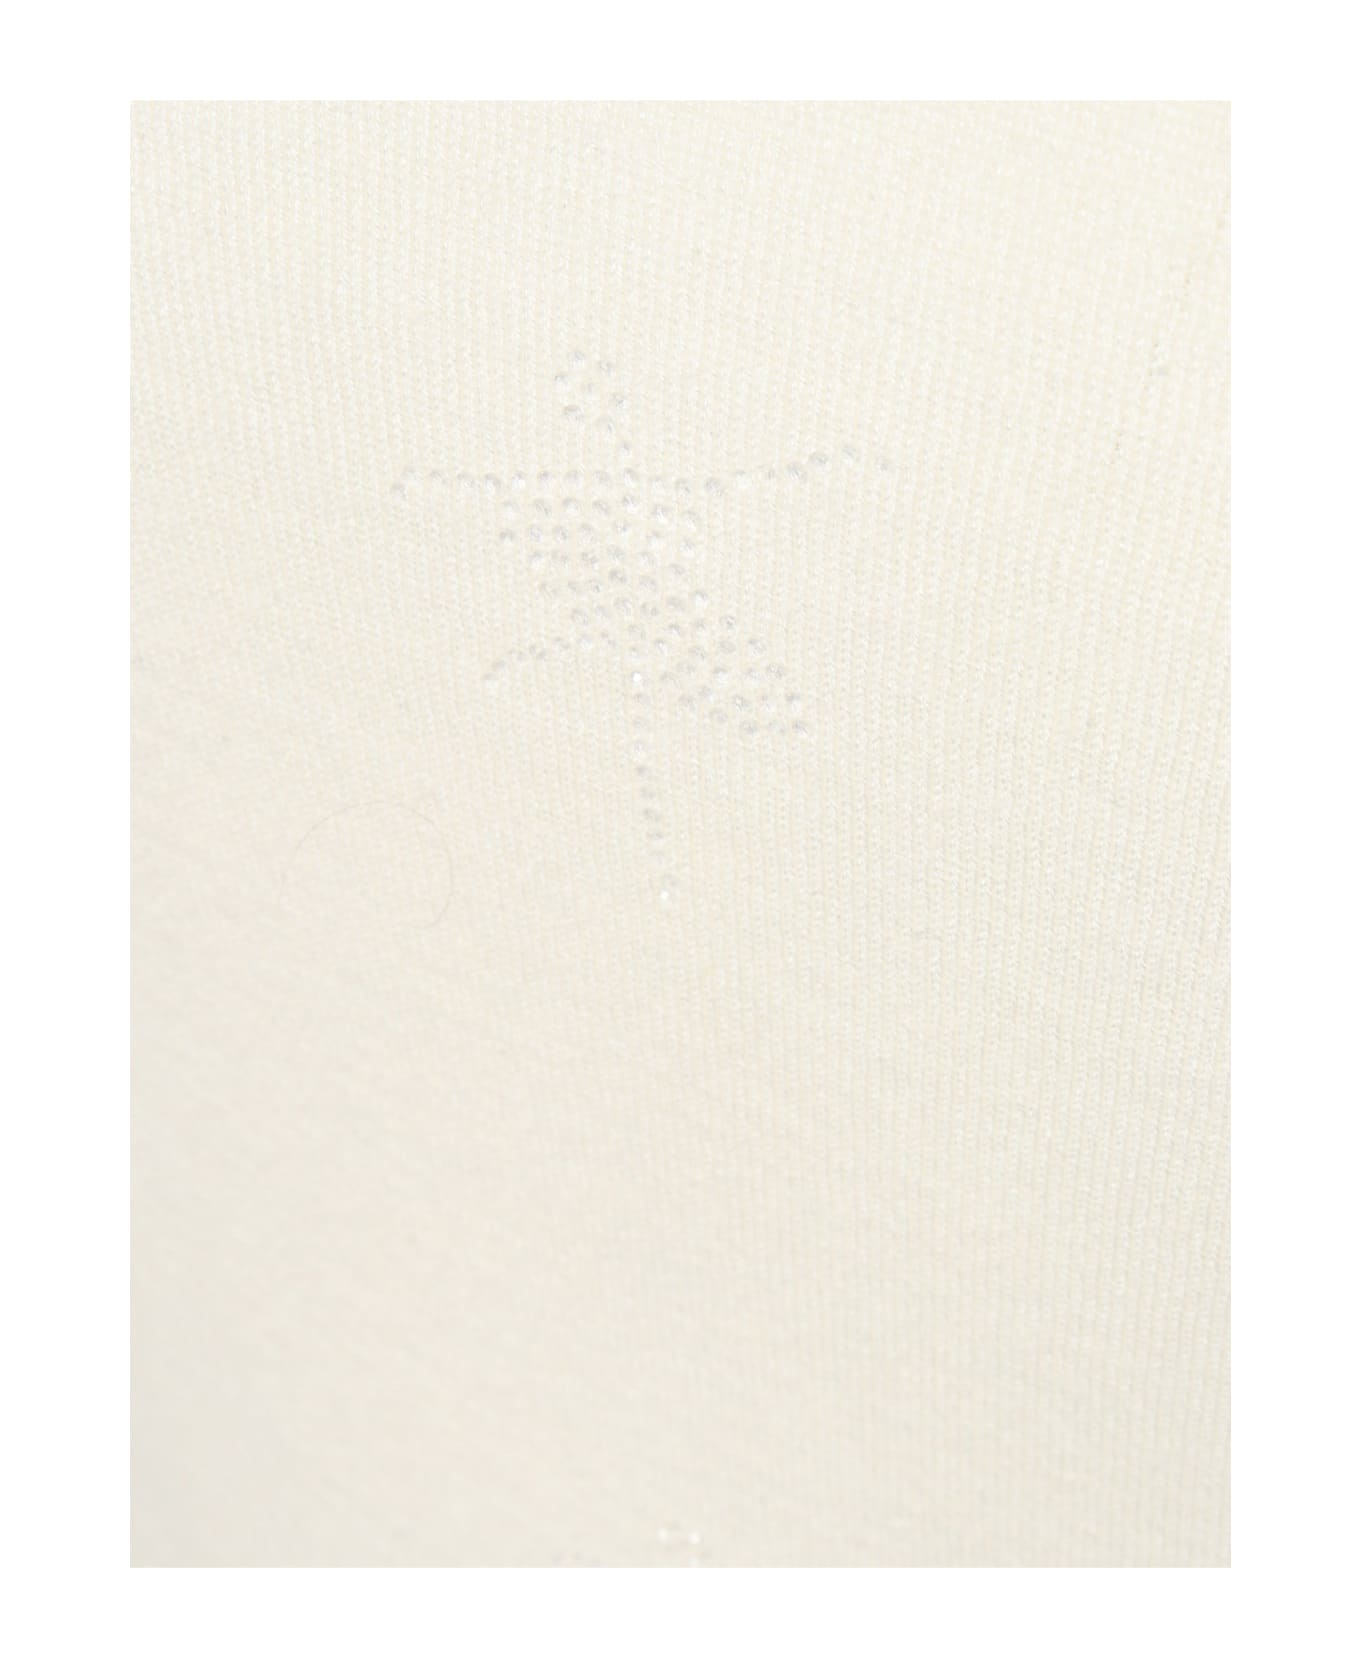 Max Mara Studio Cream Colored Sweater - WHITE